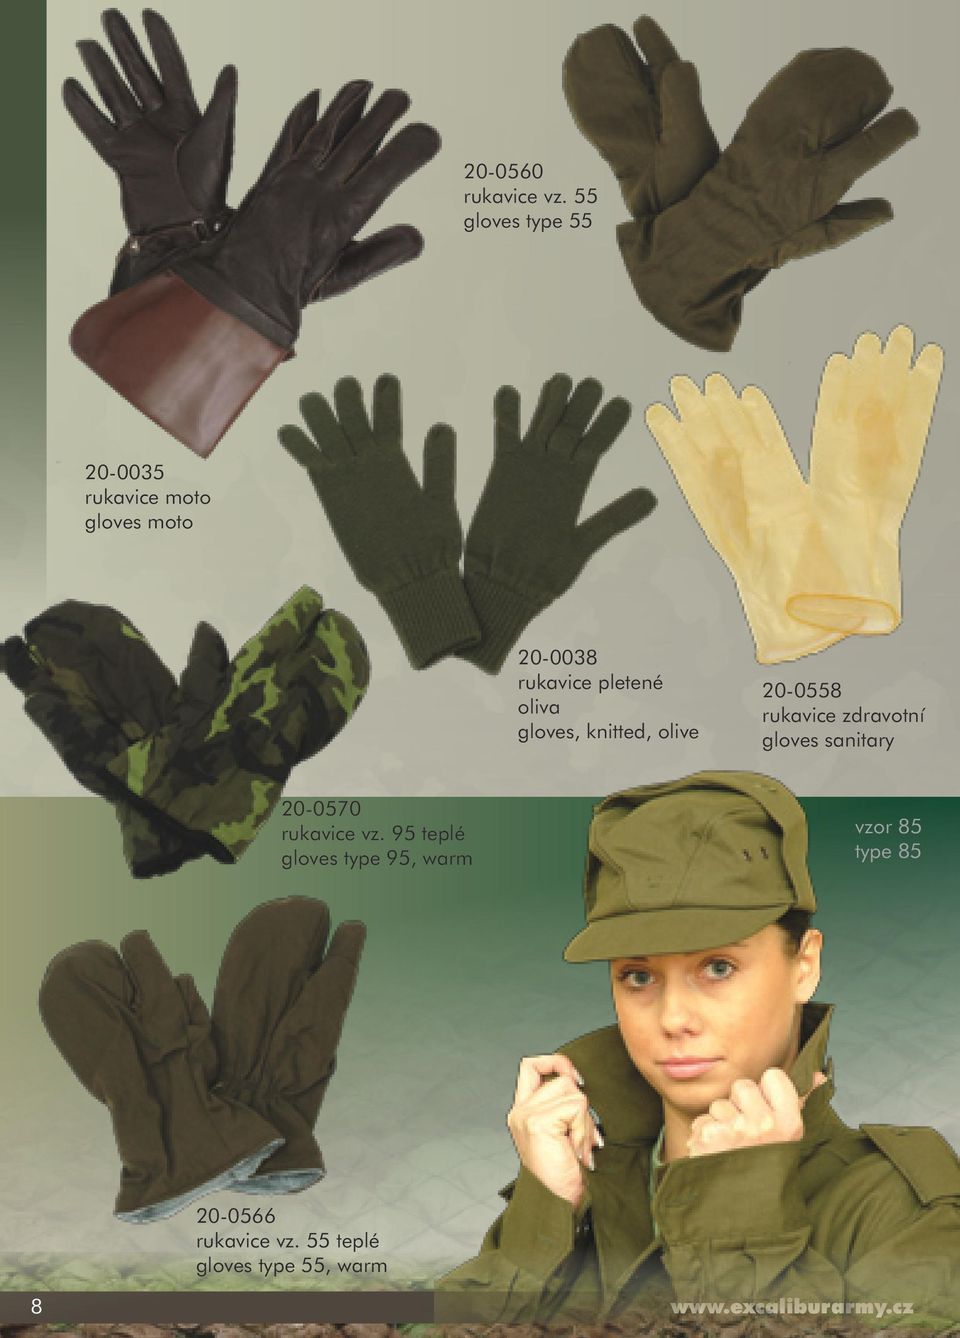 pletené oliva gloves, knitted, olive 20-0558 rukavice zdravotní gloves